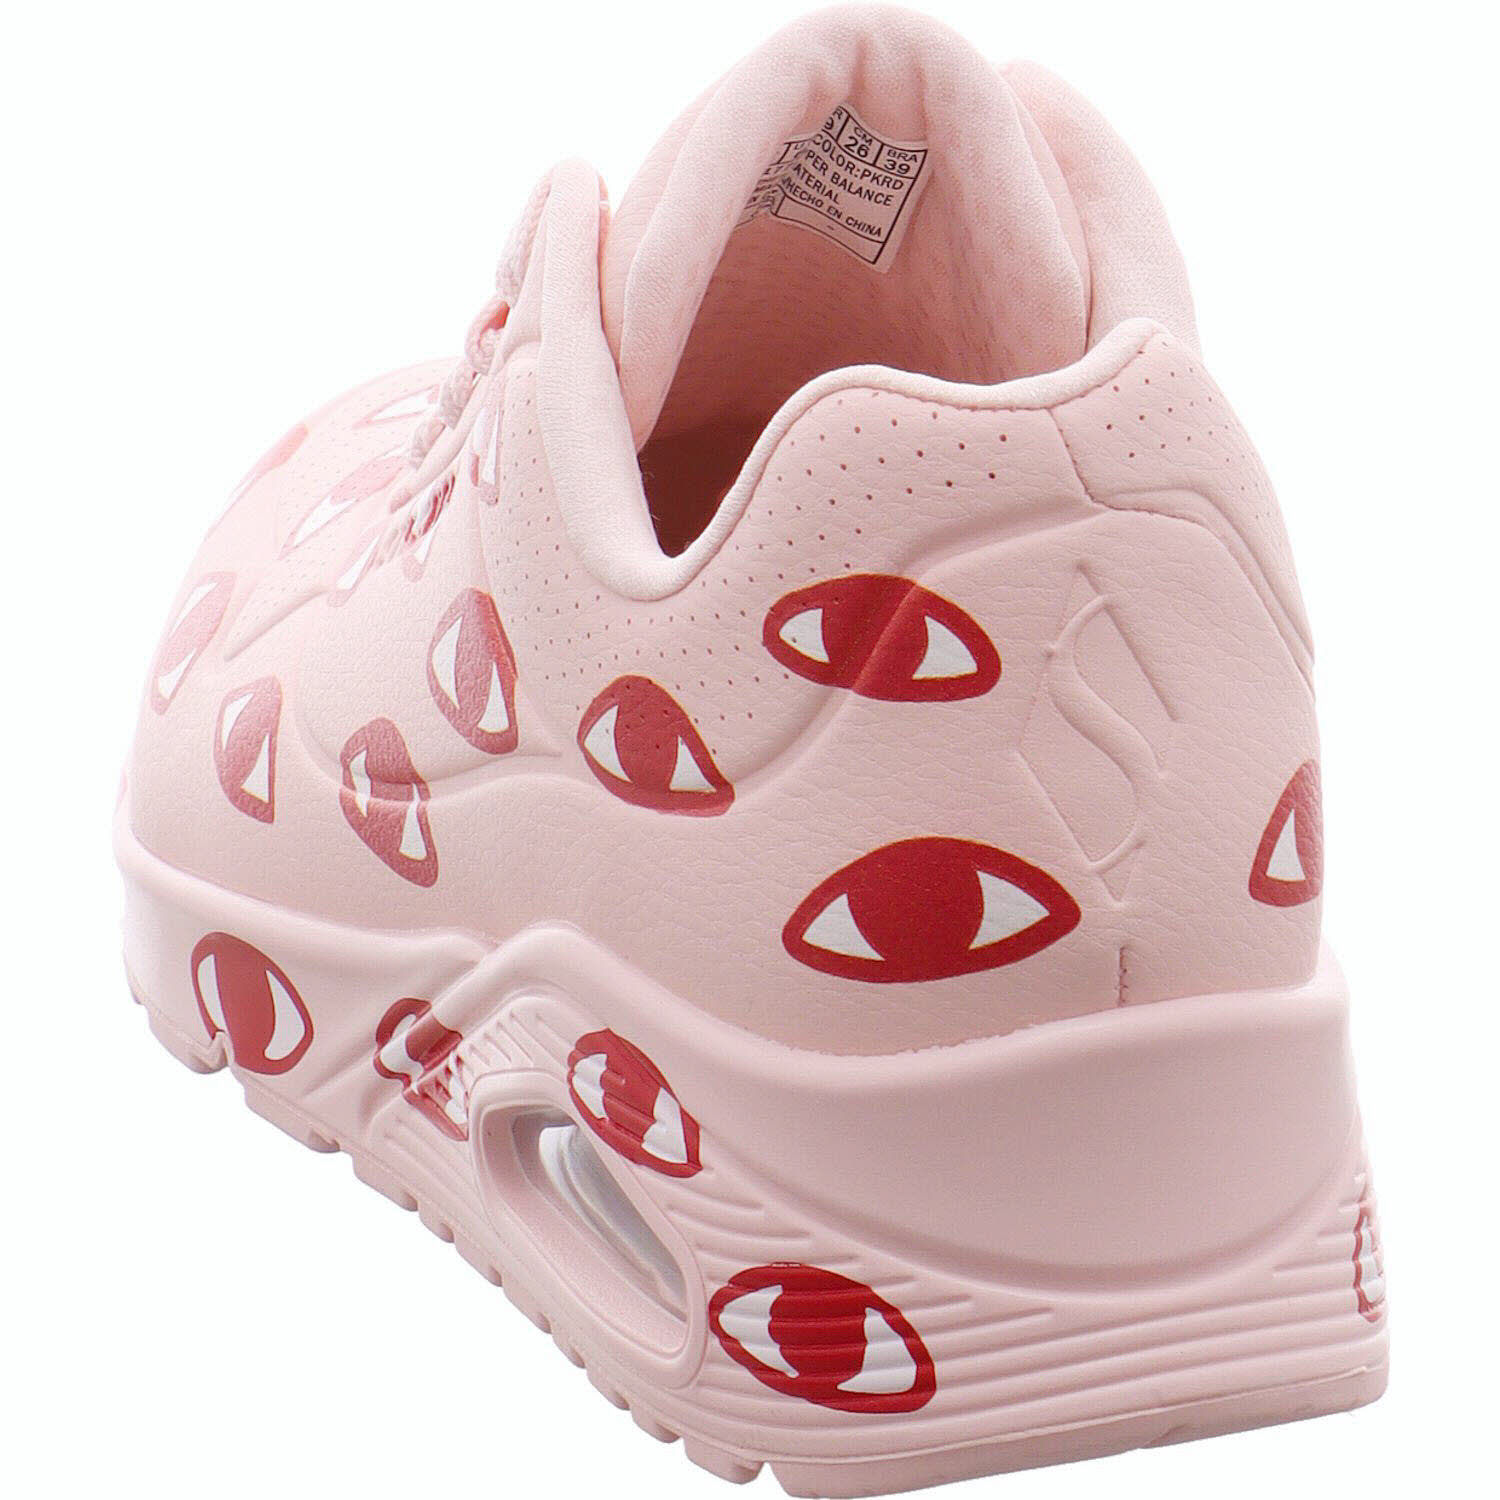 Skechers Sneaker low Uno - Many Eyes